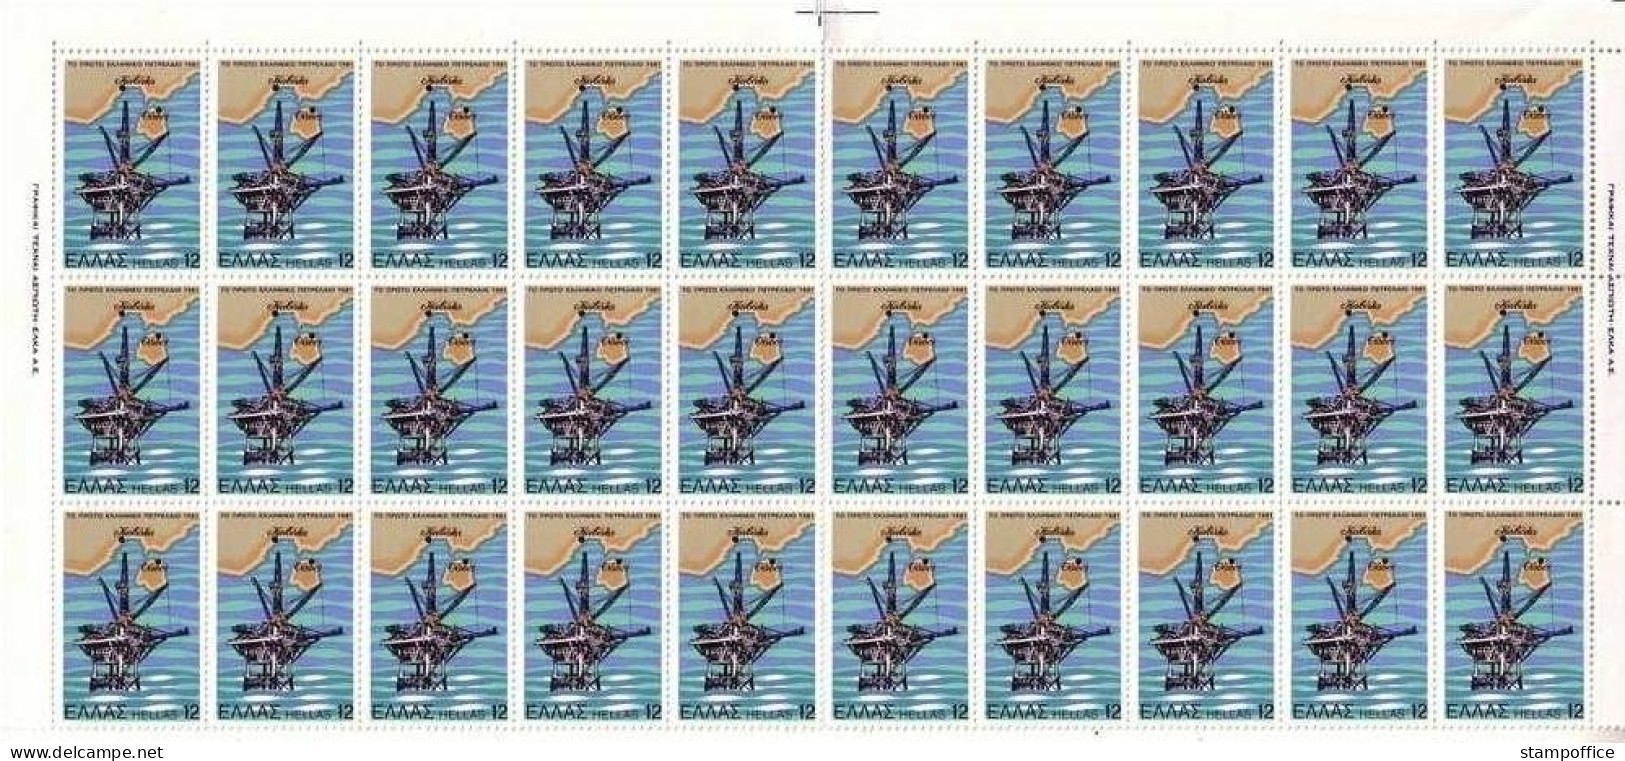 GRIECHENLAND MI-NR. 1453 POSTFRISCH(MINT) Bogenteil (30) BOHRTURM ERDÖLPRODUKTION GRIECHENLAND - Unused Stamps